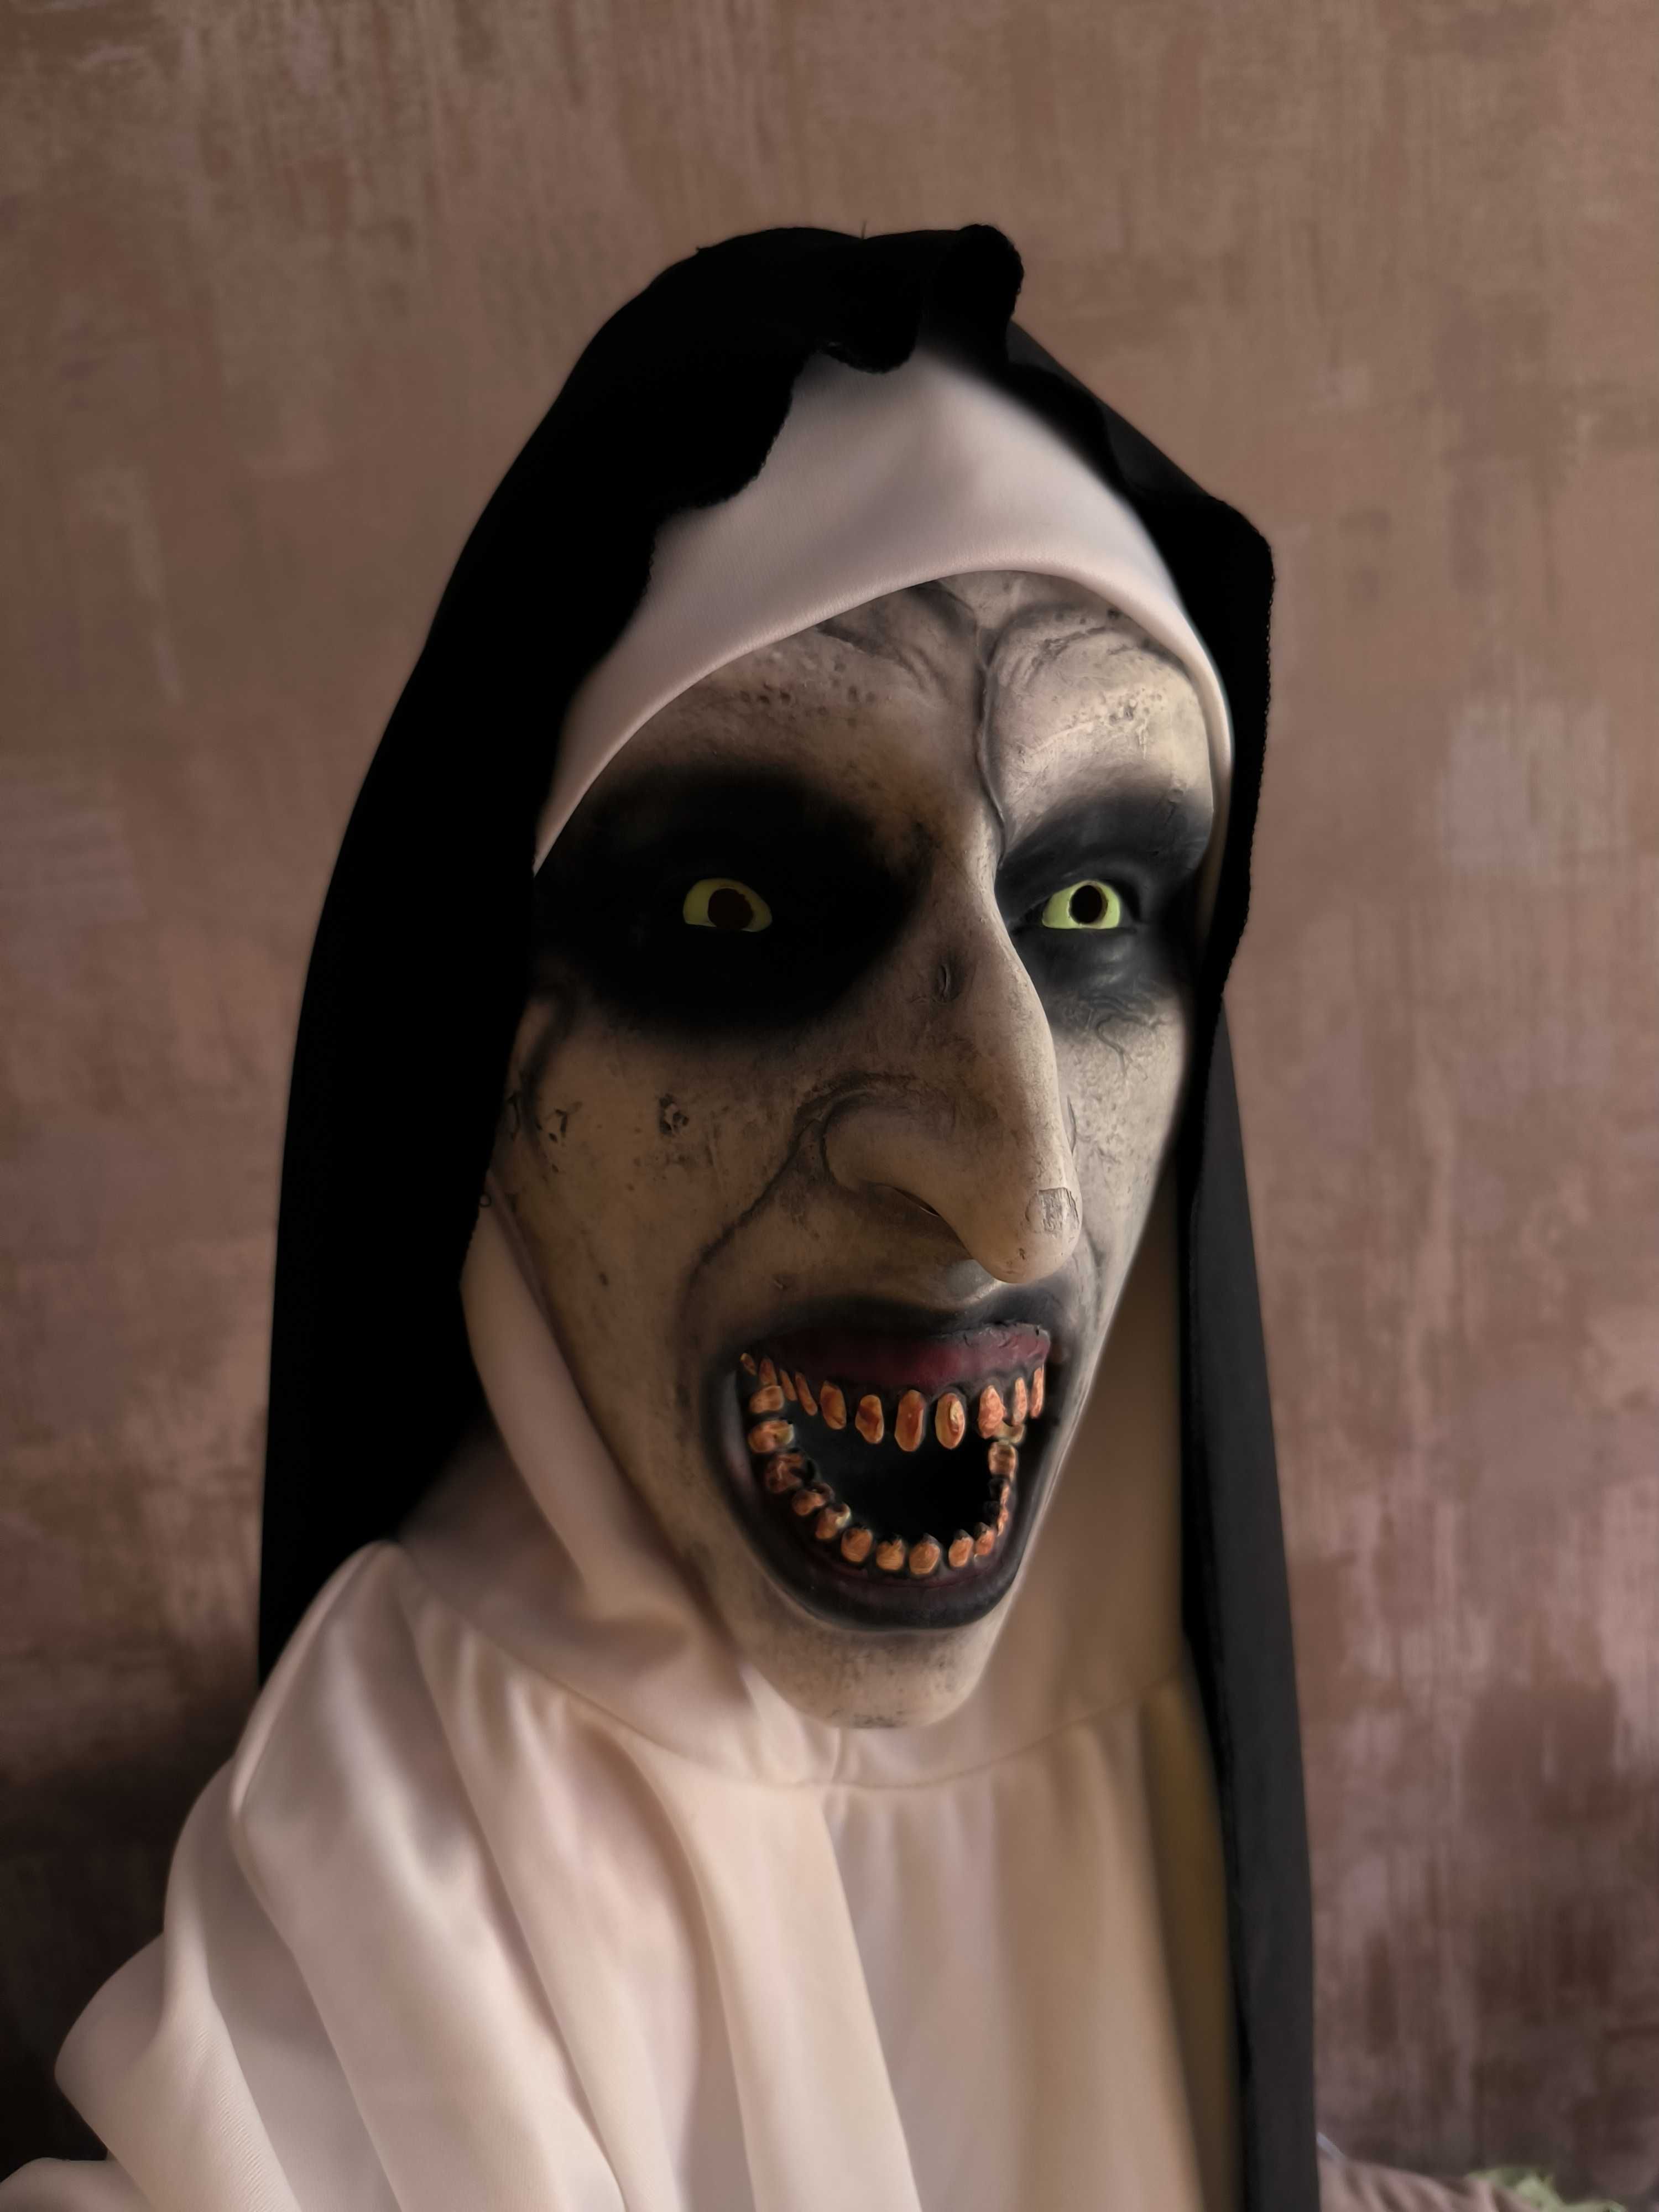 Косплей "монахиня" (The Nun) с маской, мантией, перчатками